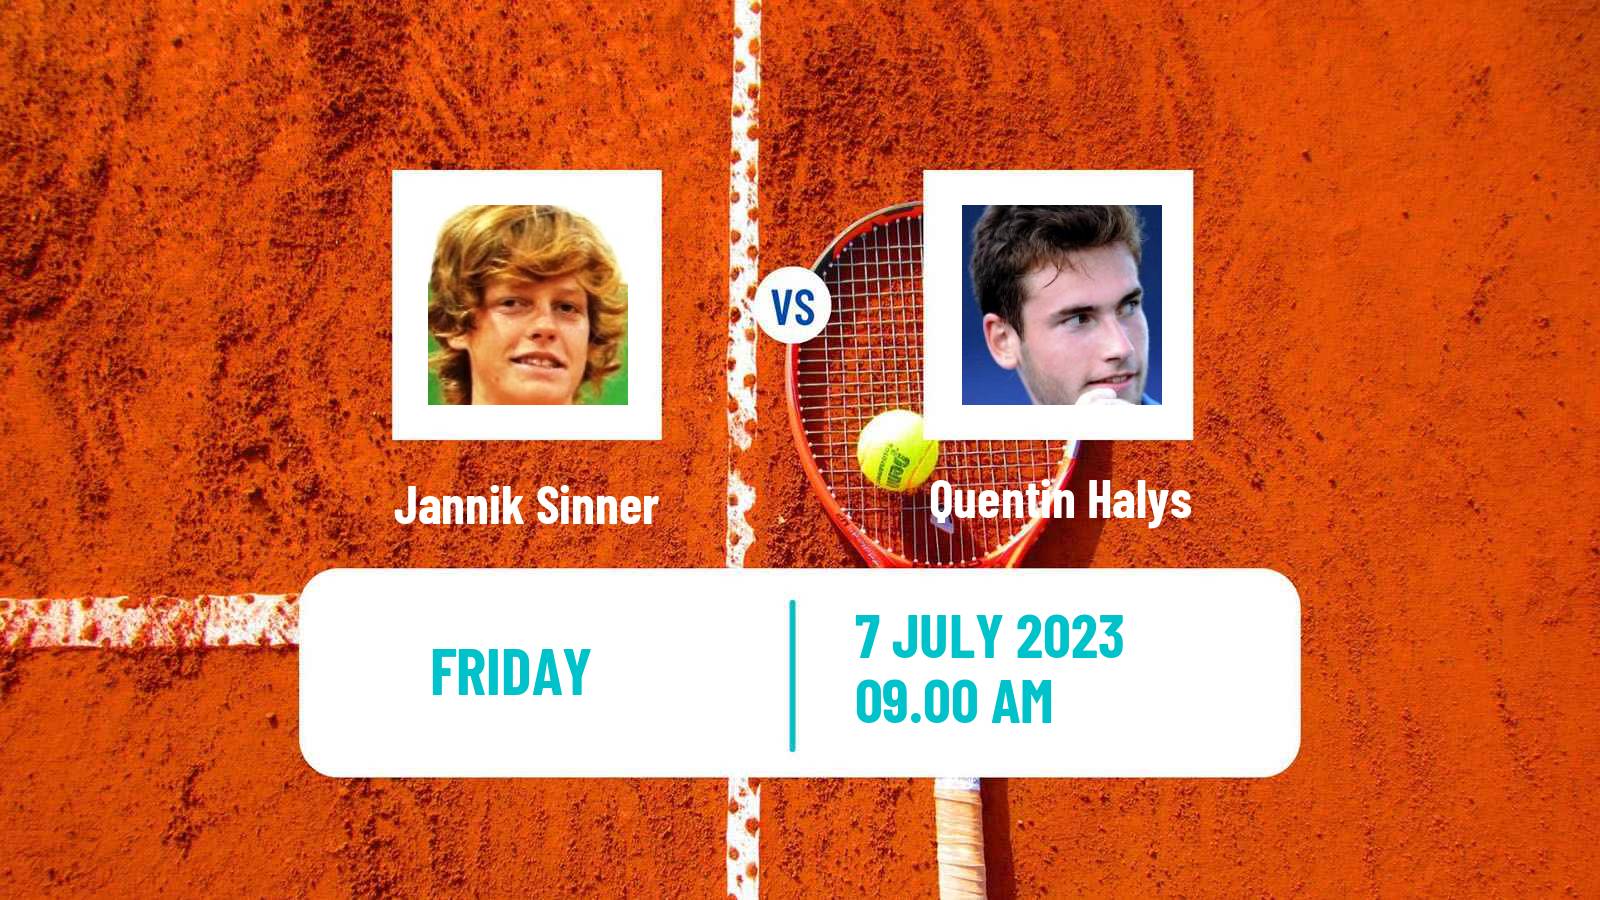 Tennis ATP Wimbledon Jannik Sinner - Quentin Halys